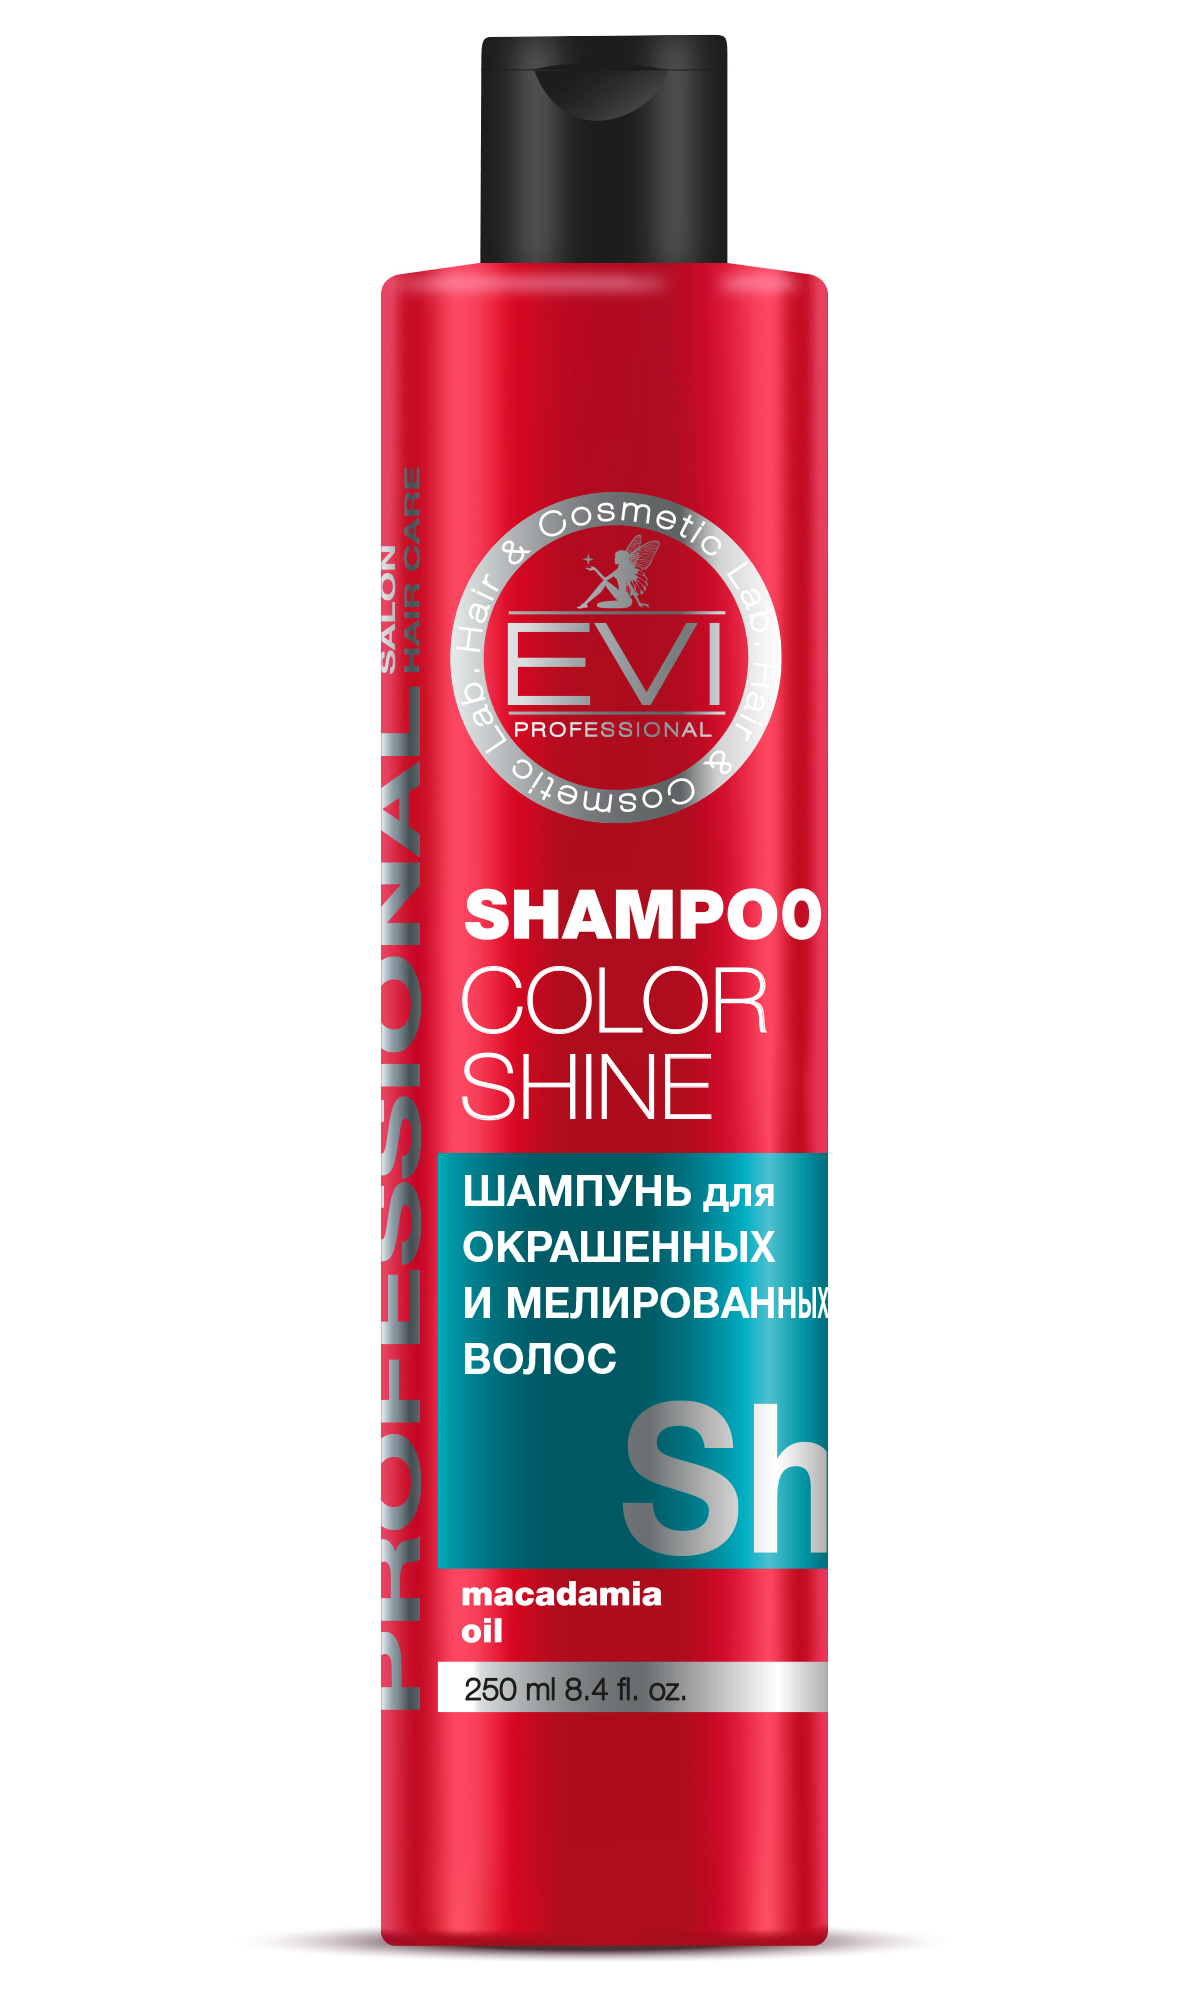 Шампунь Evi Professional Интенсивный уход для окрашенных и мелированных волос - фото 1